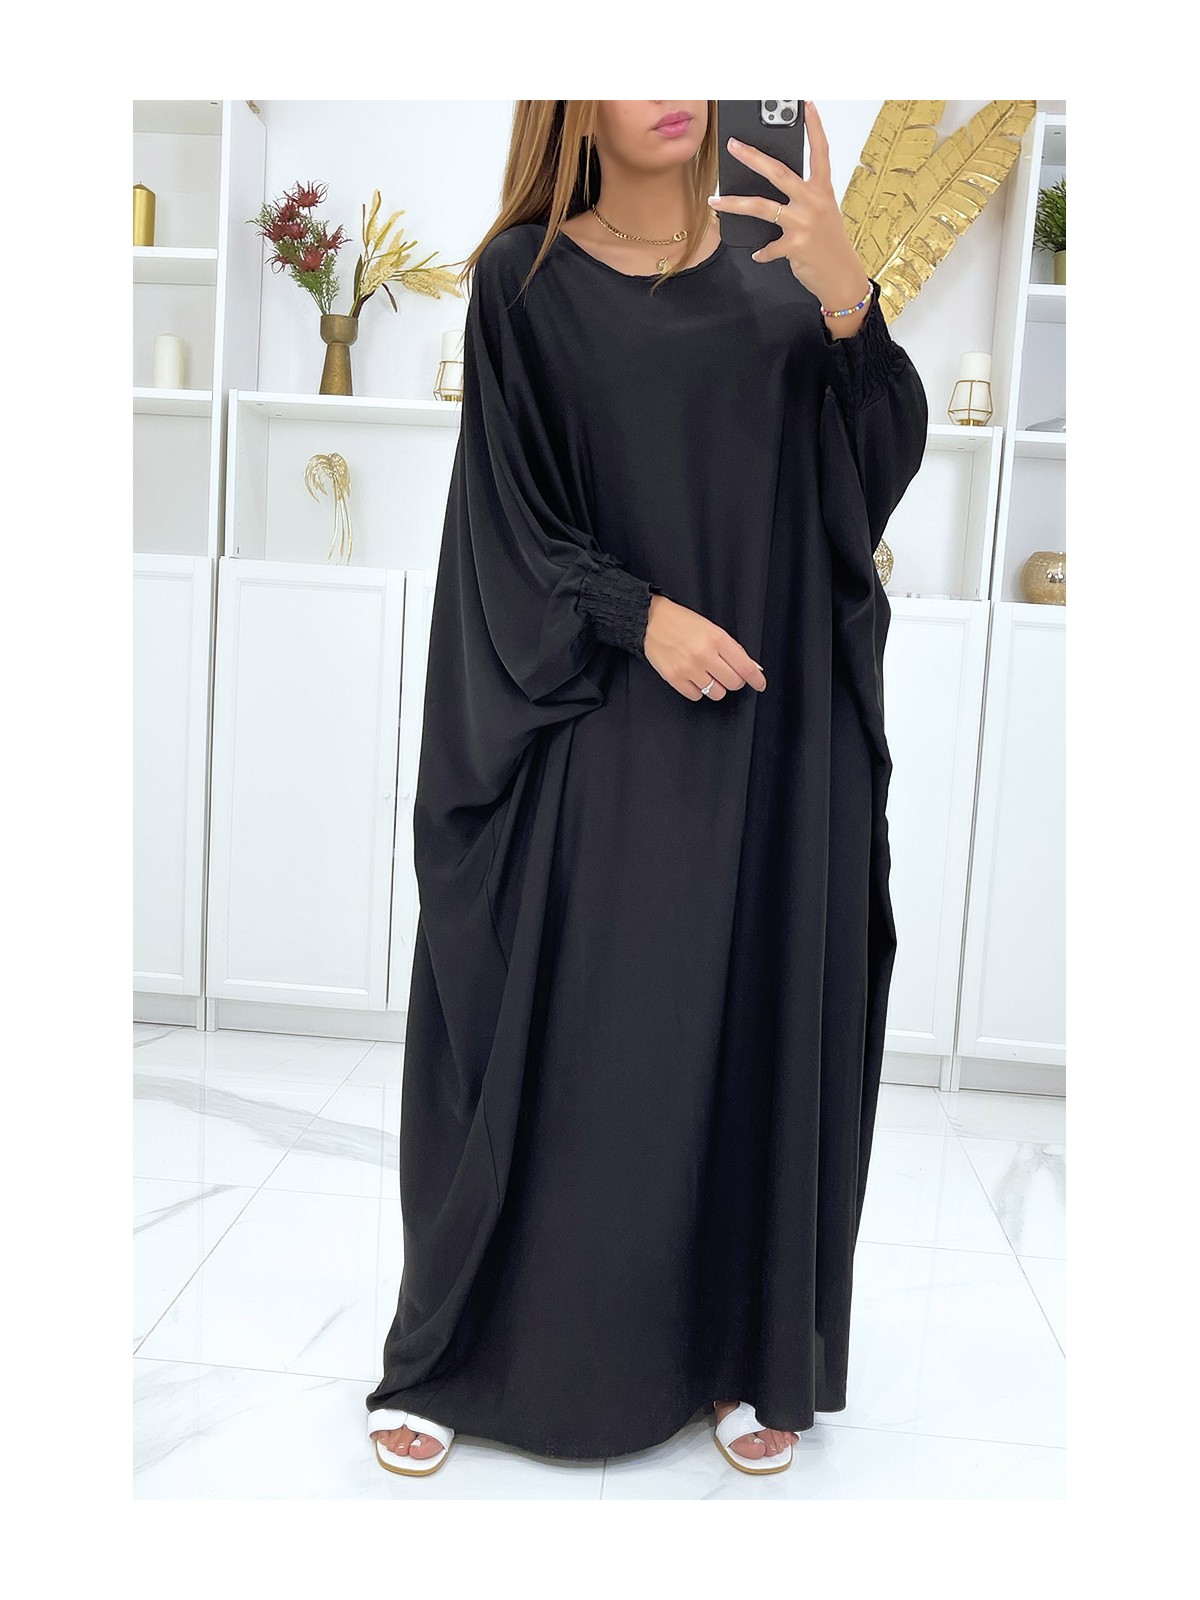 LoLLue abaya noire très ample avec élastique aux manches  - 3